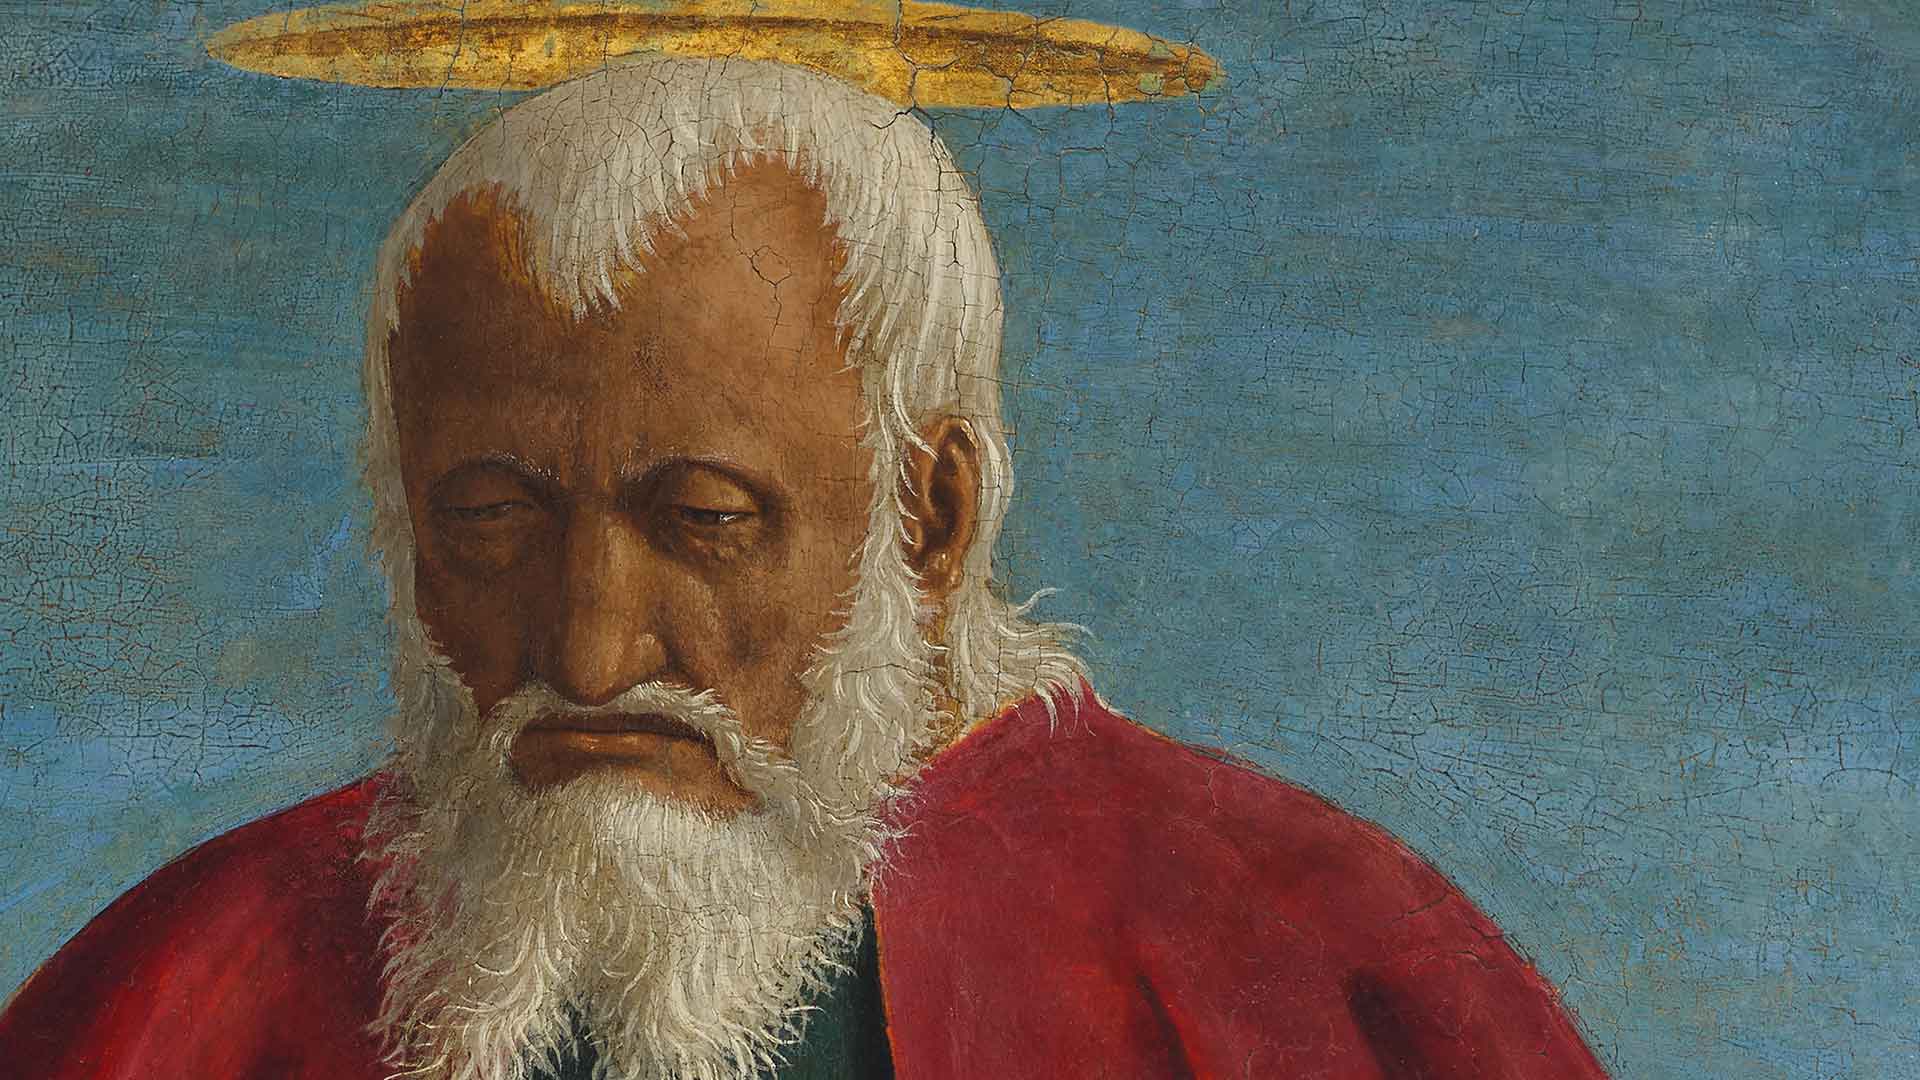 Dettaglio di San Giovanni Evangelista di Piero della Francesca